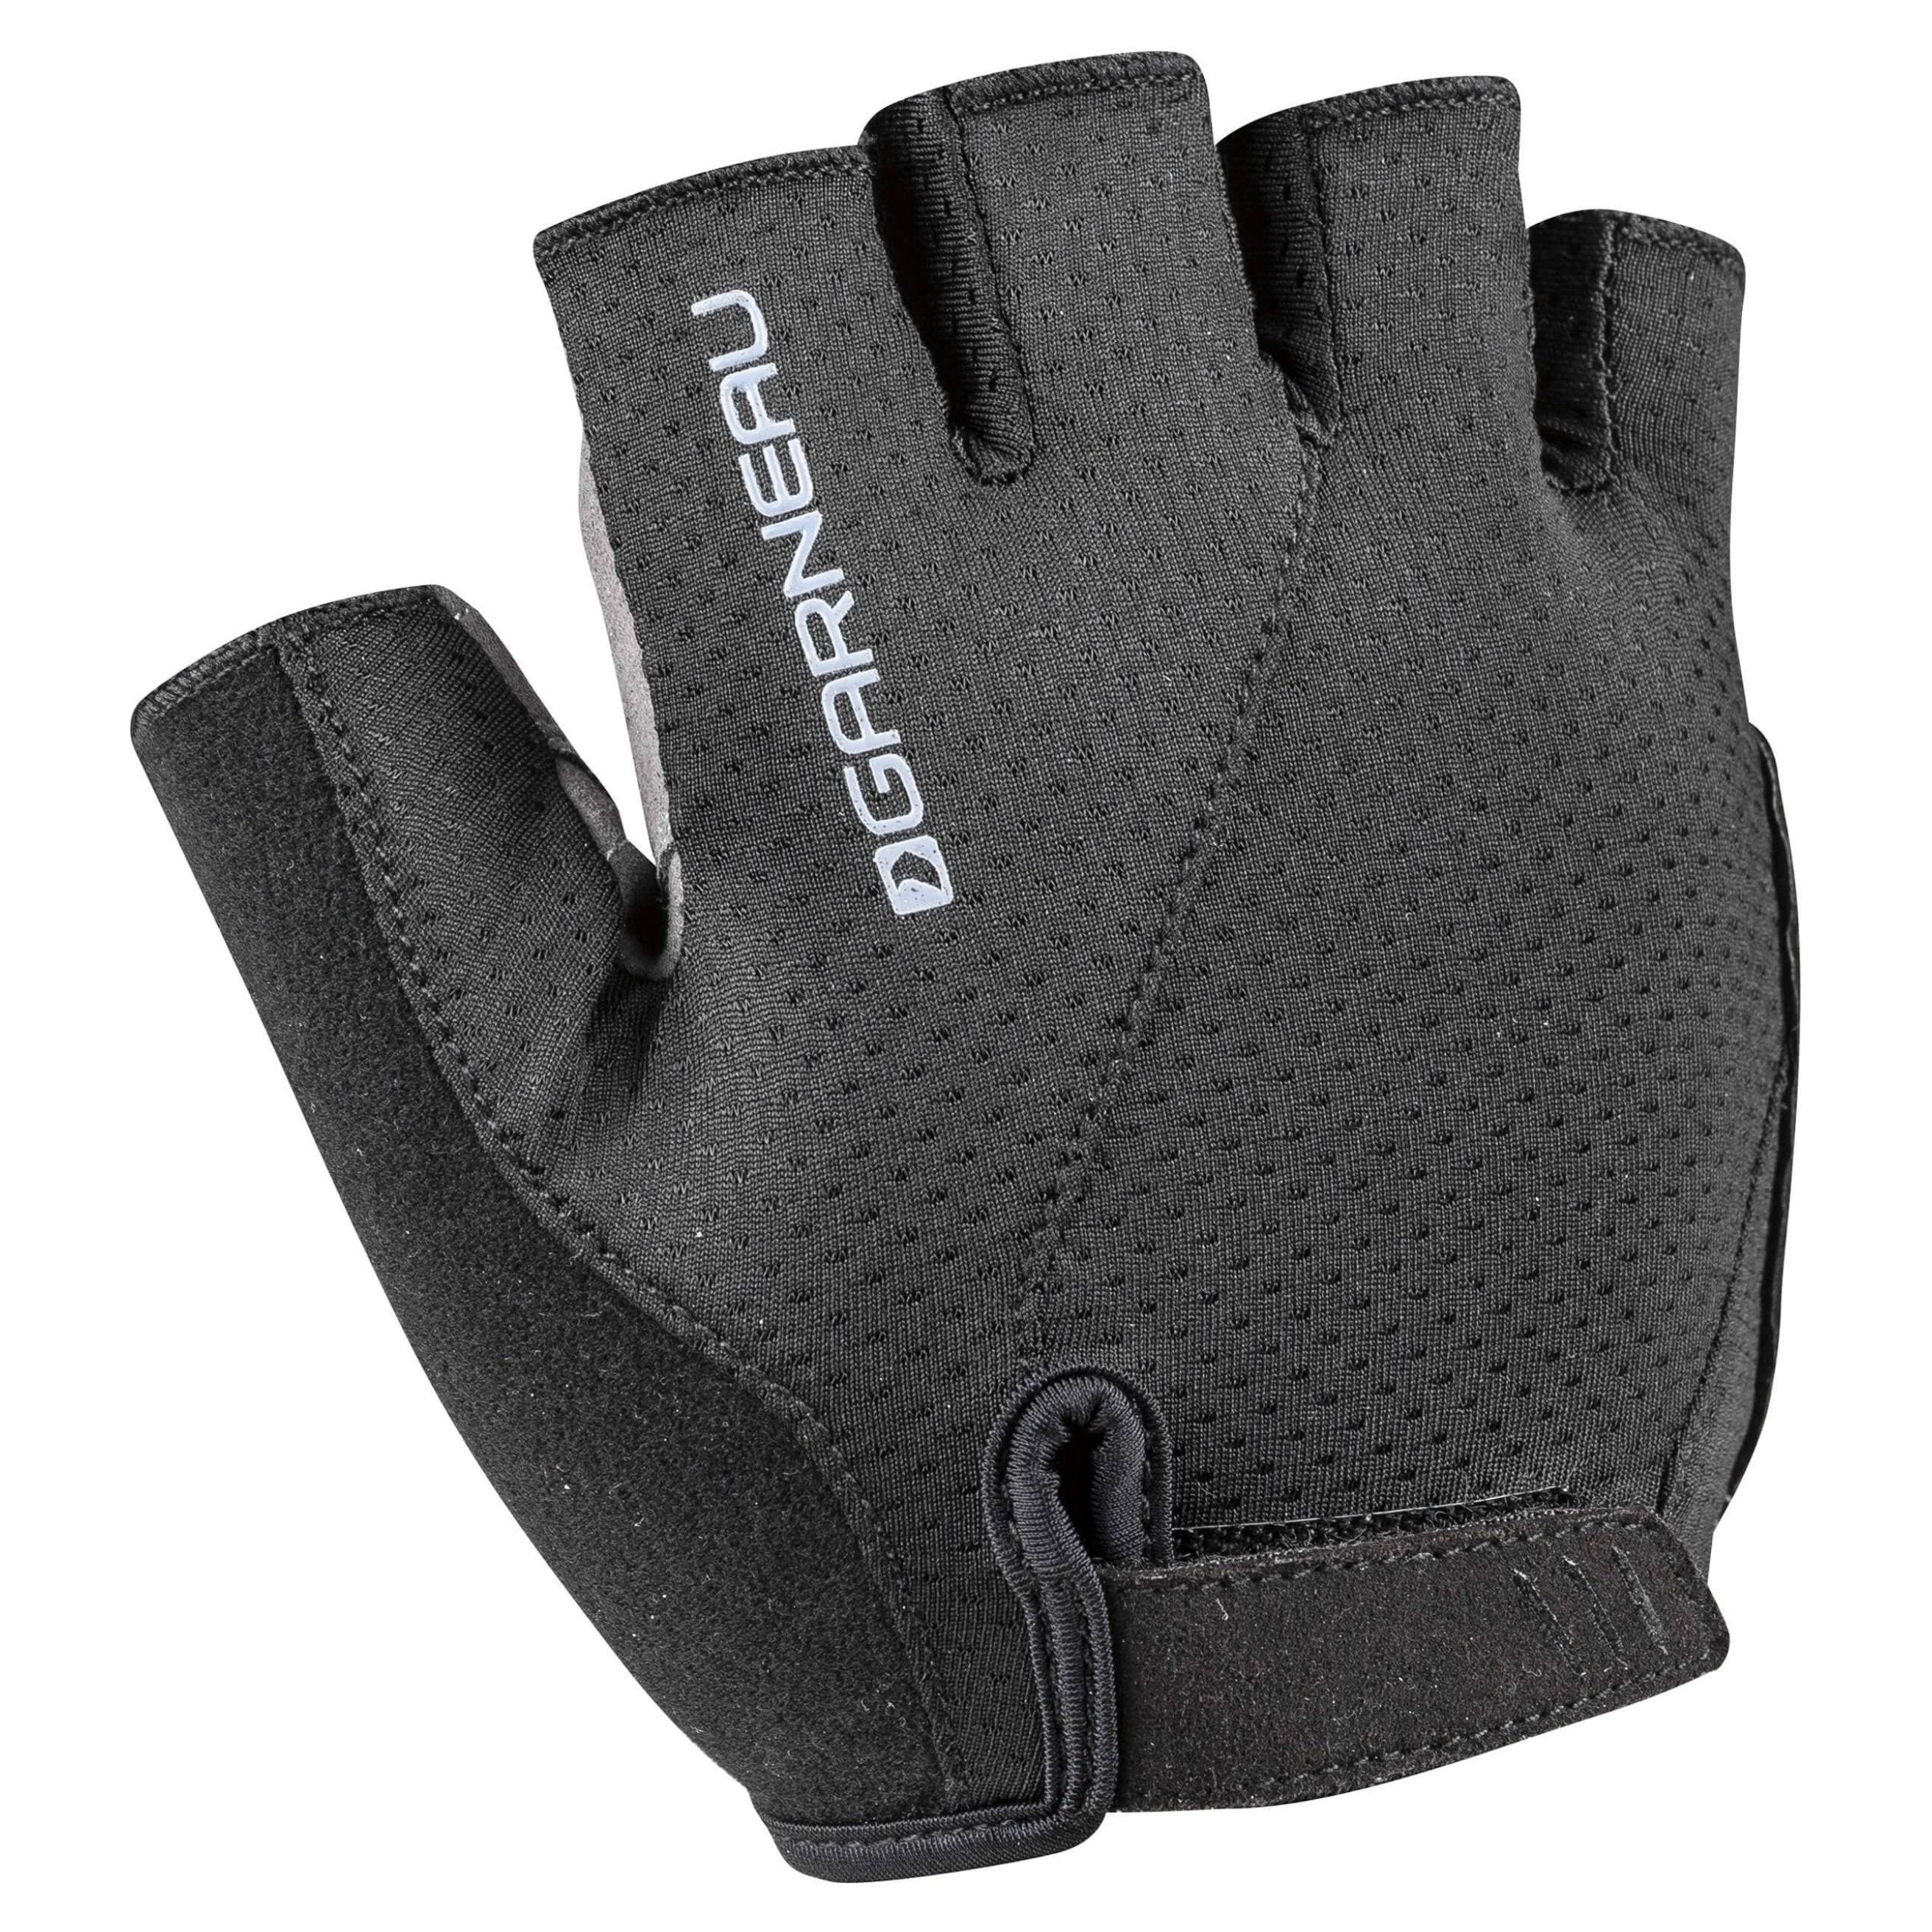 Louis Garneau Men's Air Gel Ultra Cycling Gloves - Black